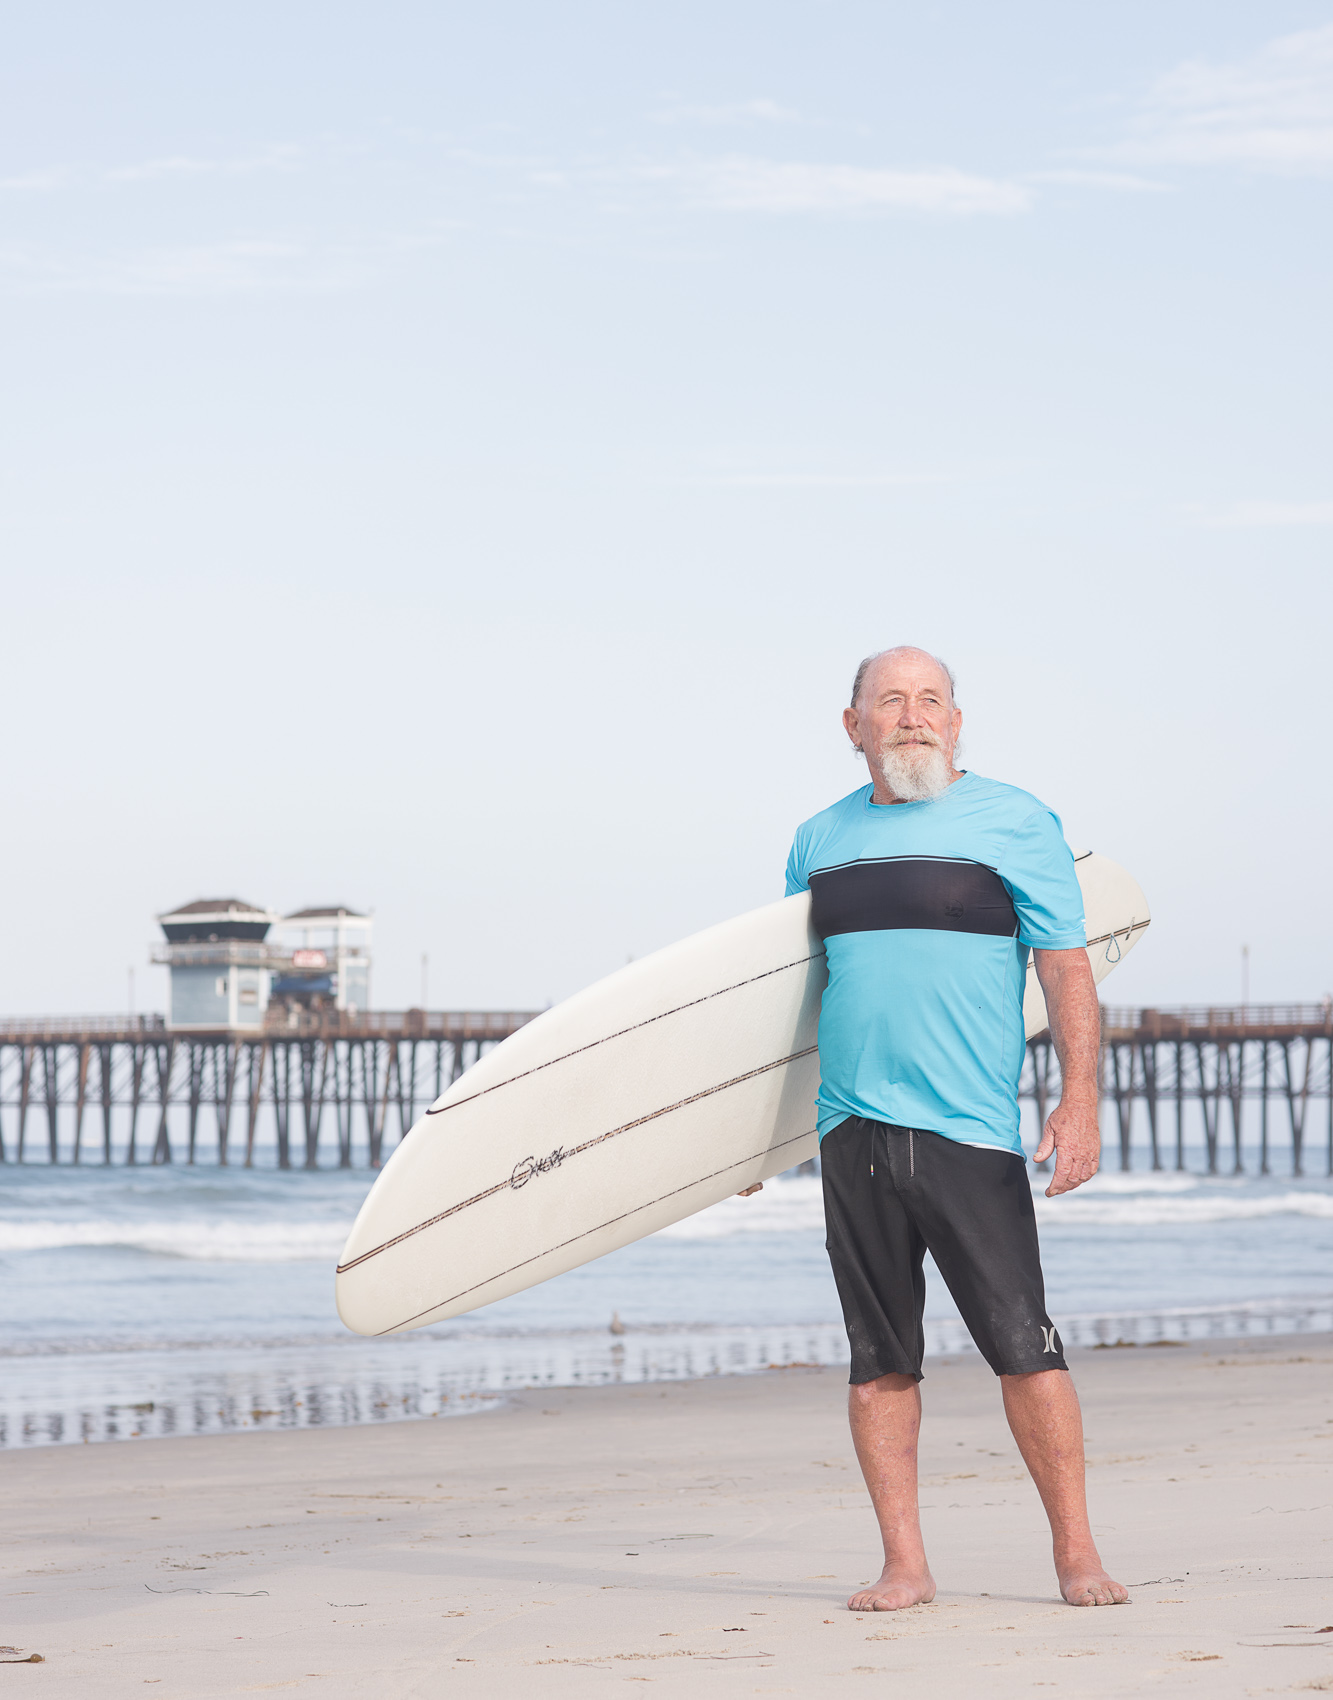 A senior surfer portrait on the beach in Oceanside, Calif.